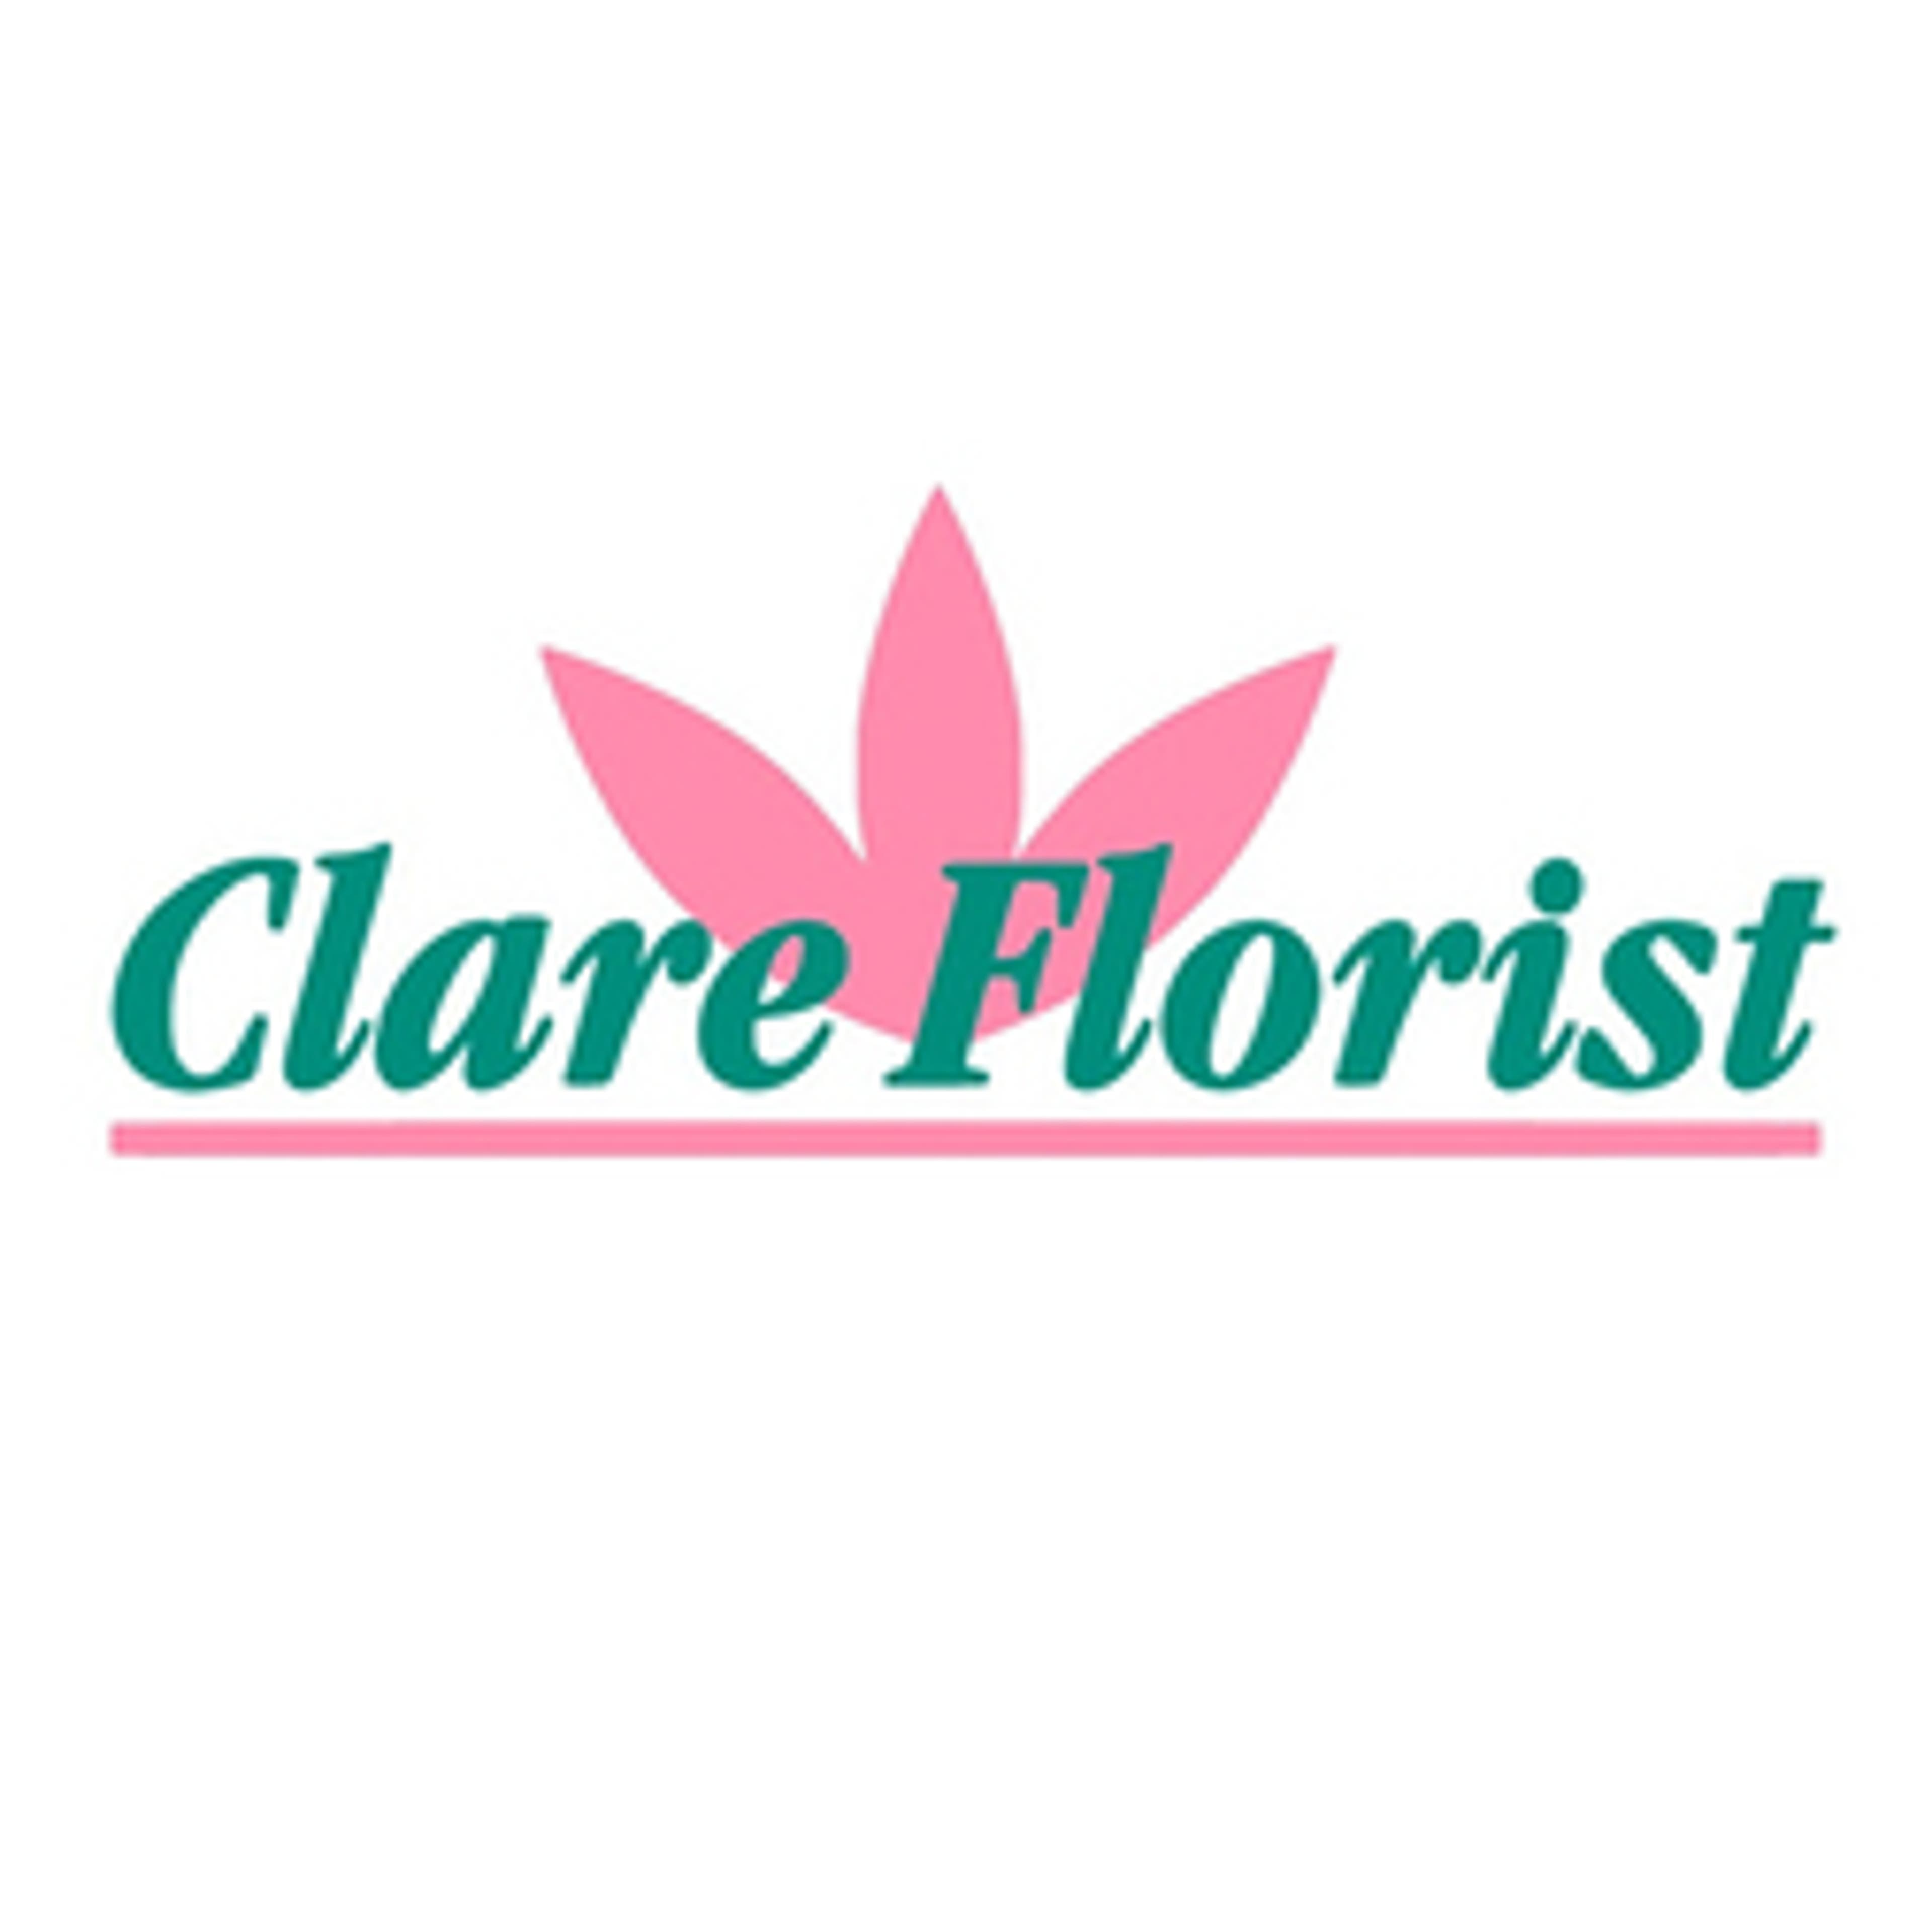  Clare Florist 